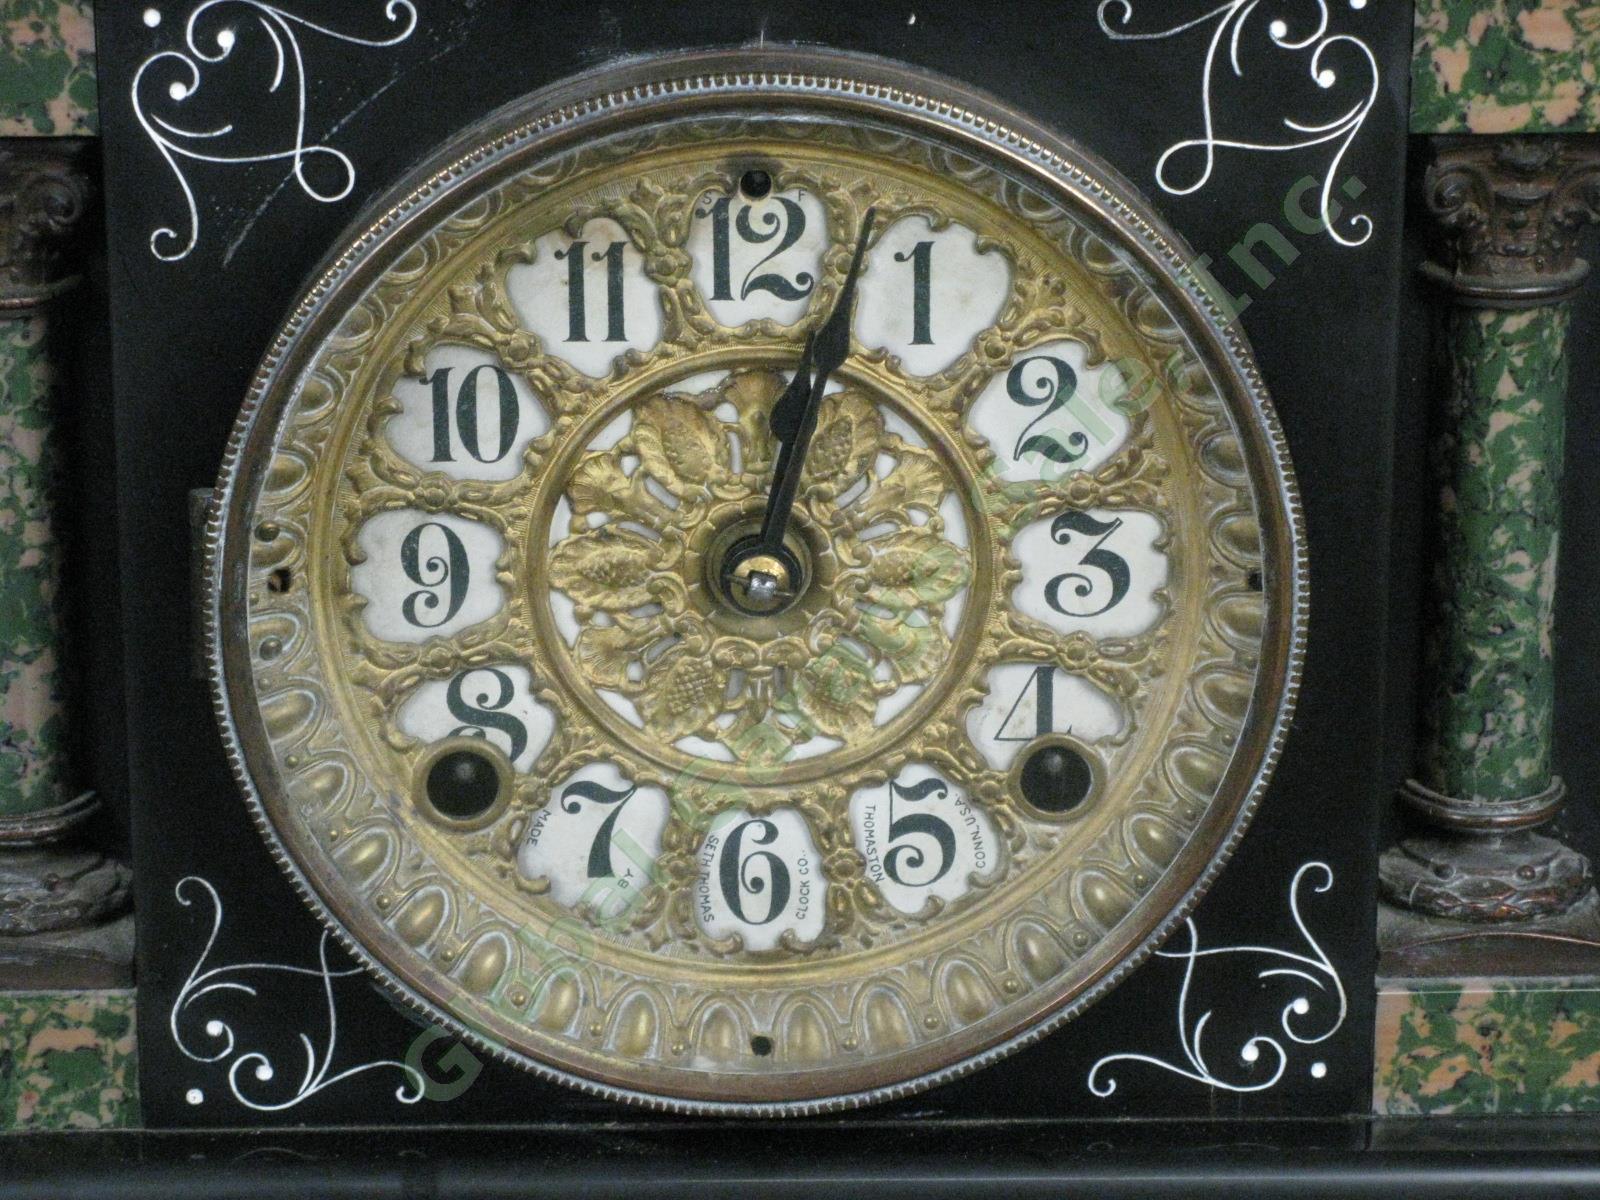 Rare Antique Seth Thomas Green Adamantine Mantle Pendulum Clock 3 5/8 Movement 1